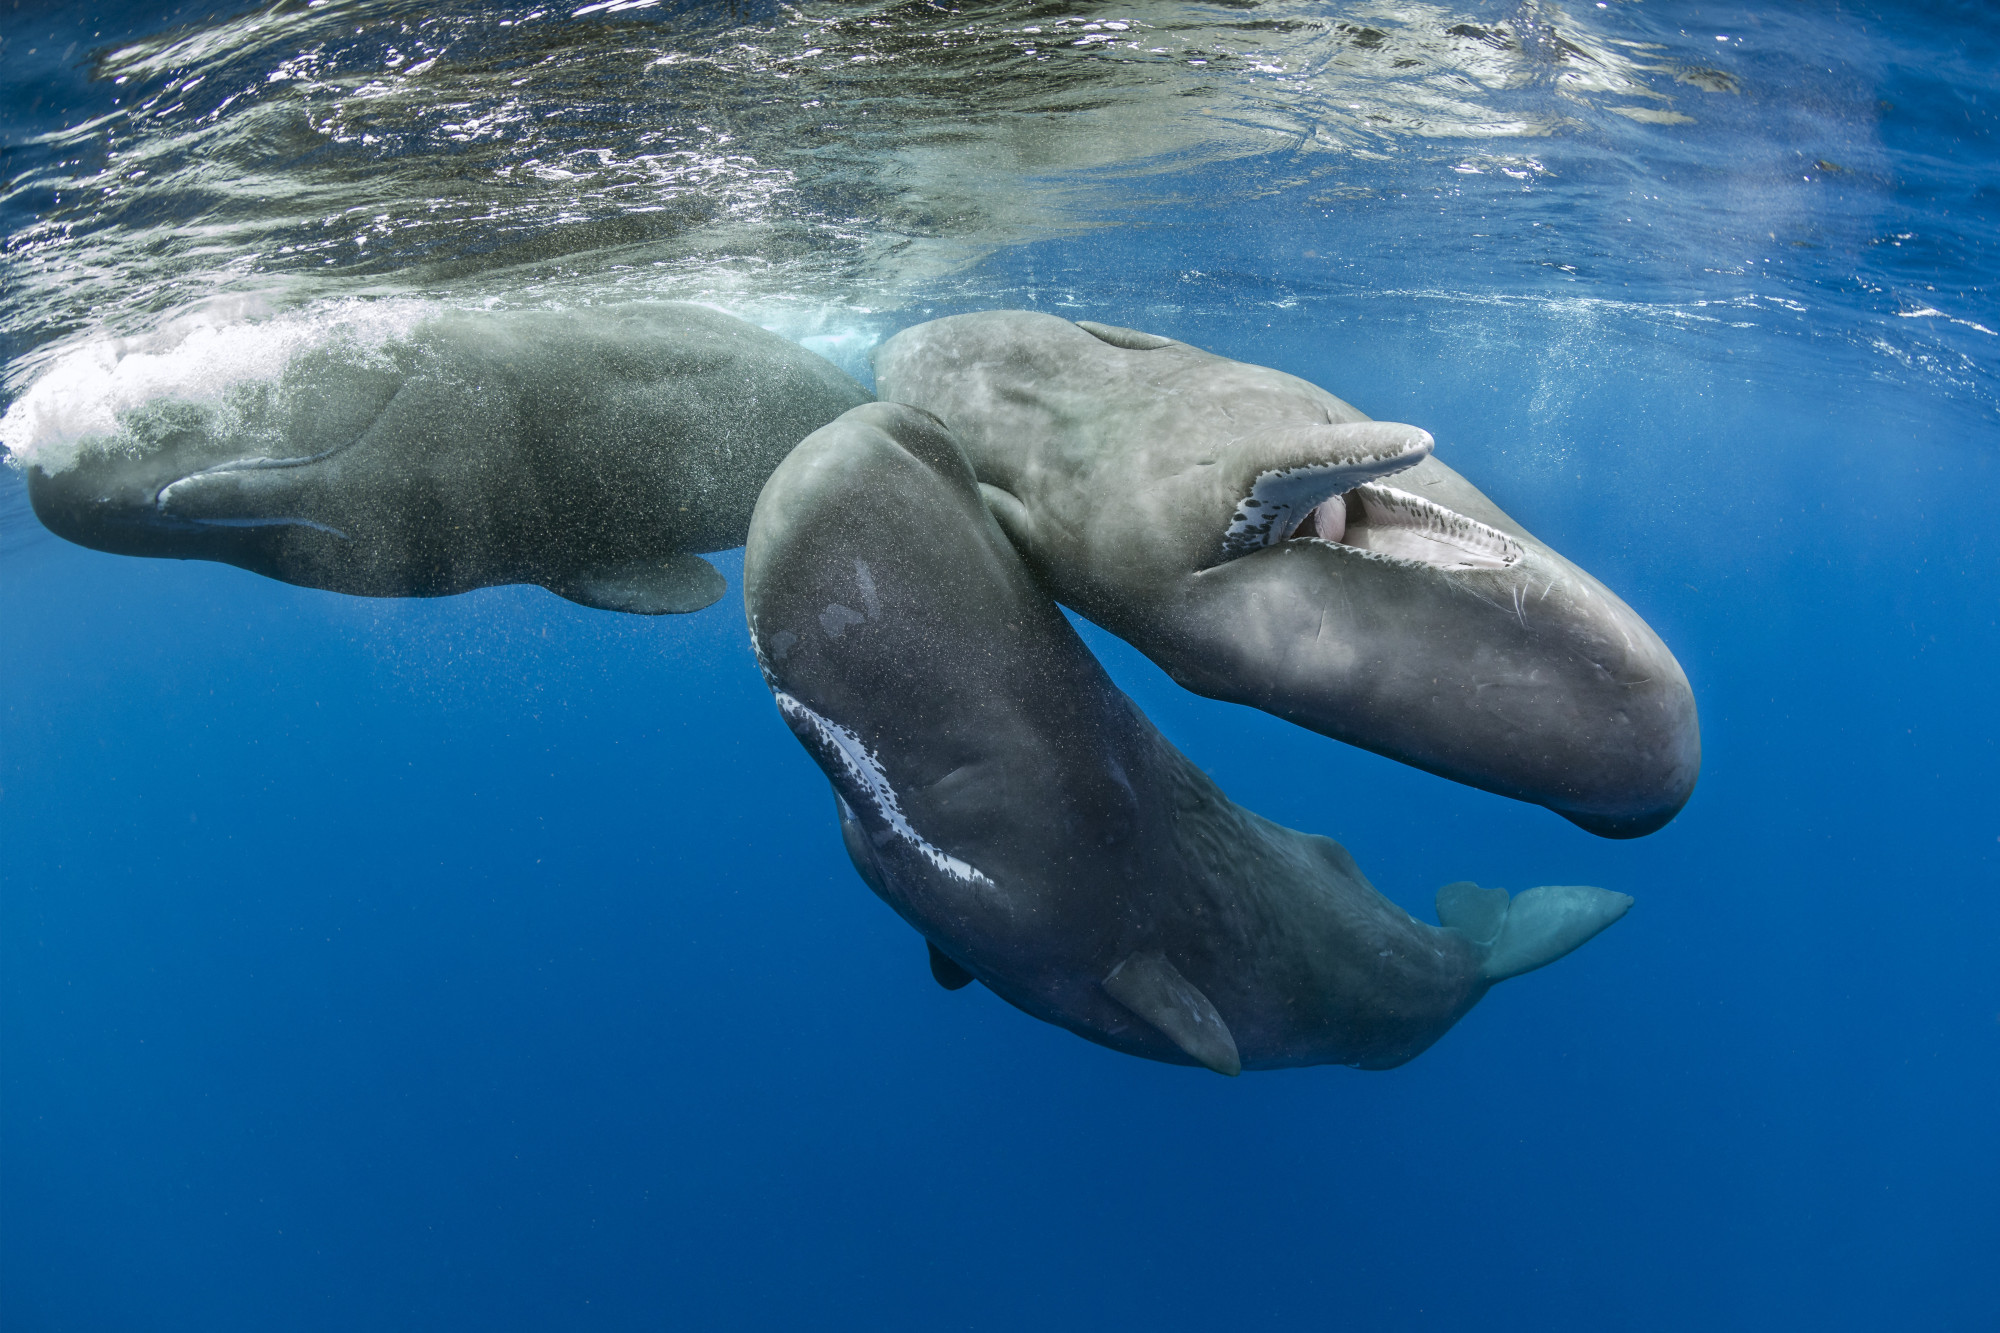 188 millió forint értékű ámbrát találtak egy elpusztult bálna emésztőrendszerében